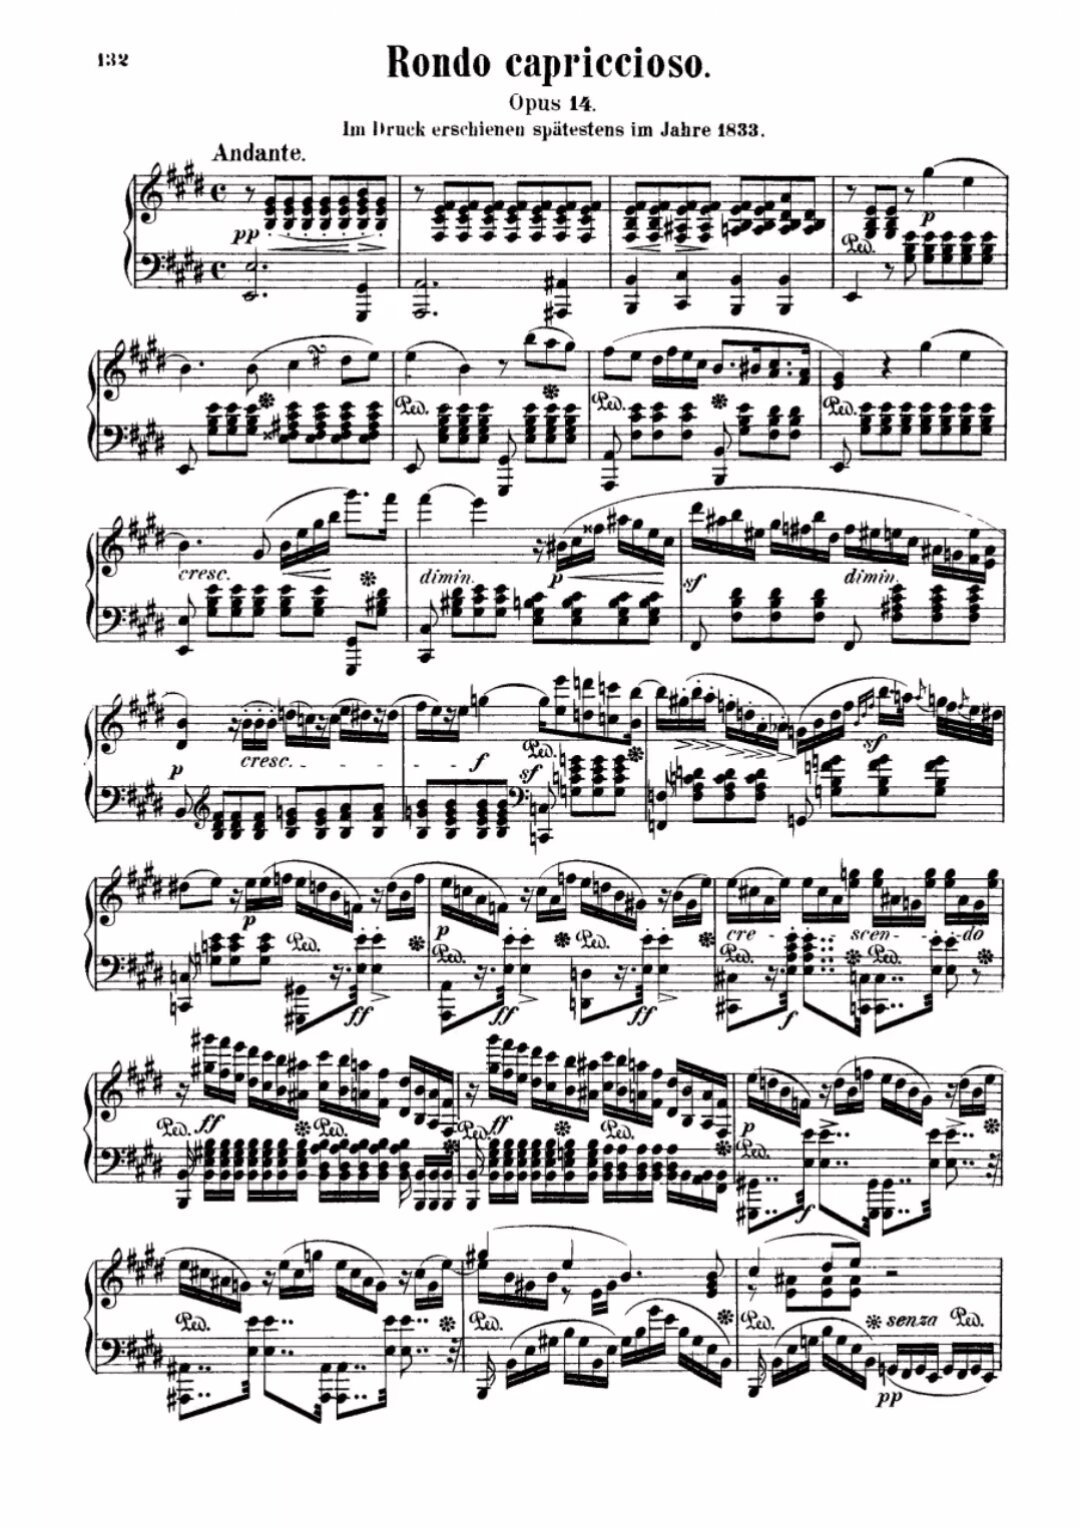 10级难度:门德尔松随想回旋曲op14钢琴谱